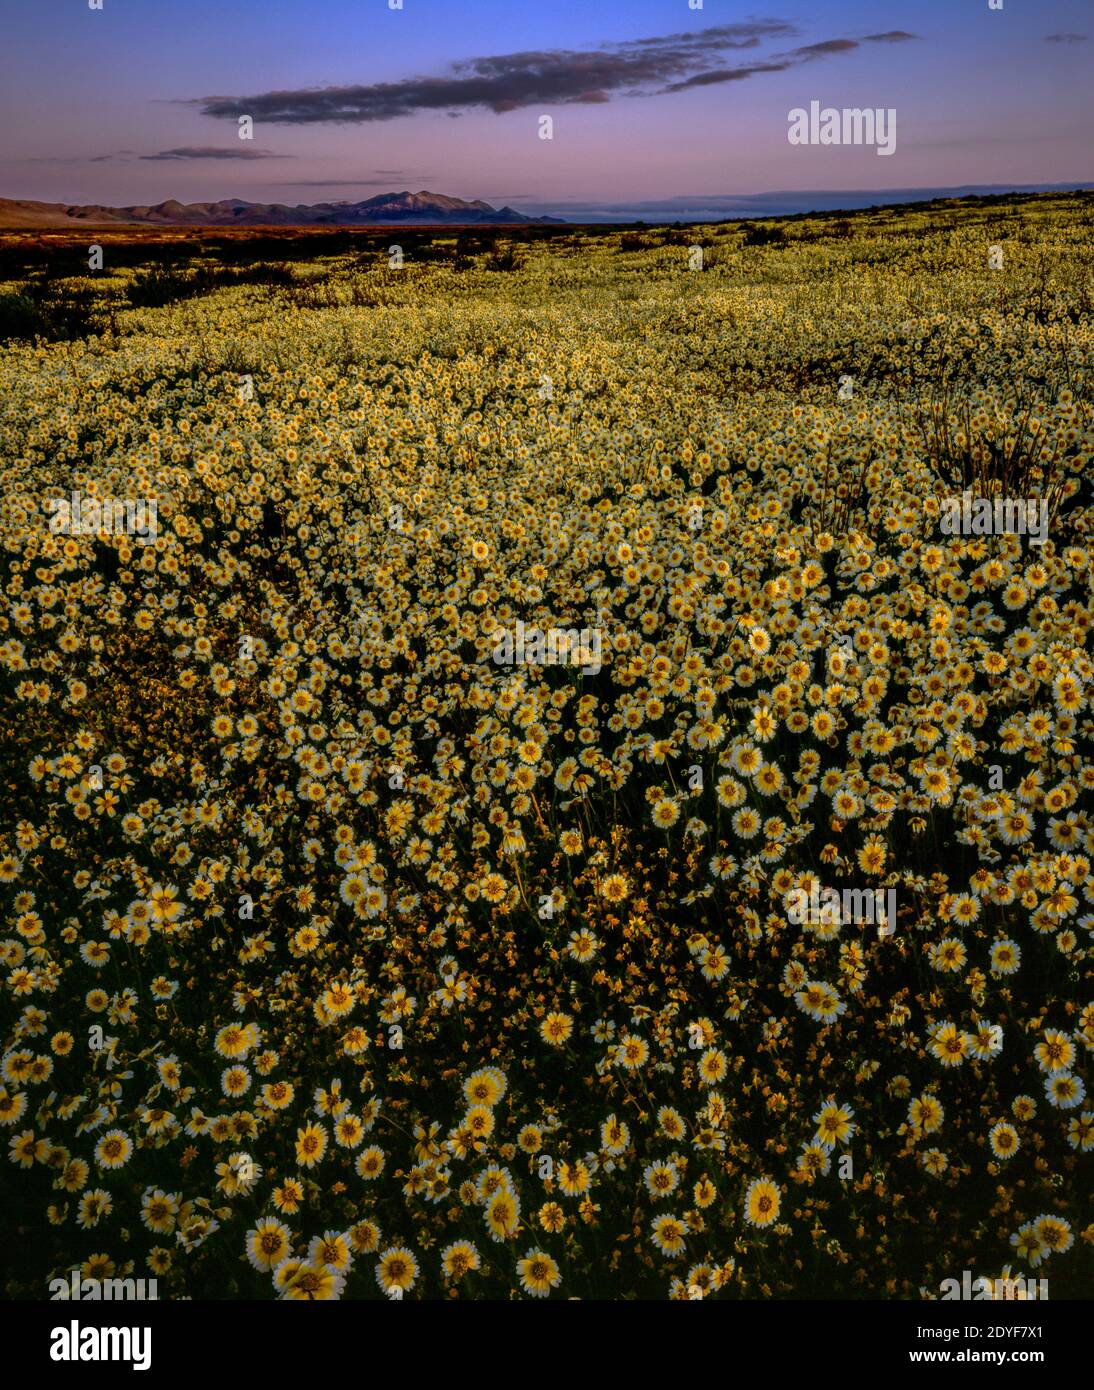 Dawn, Tidytips, Carrizo Plain National Monument, San Luis Obispo County, California Stock Photo